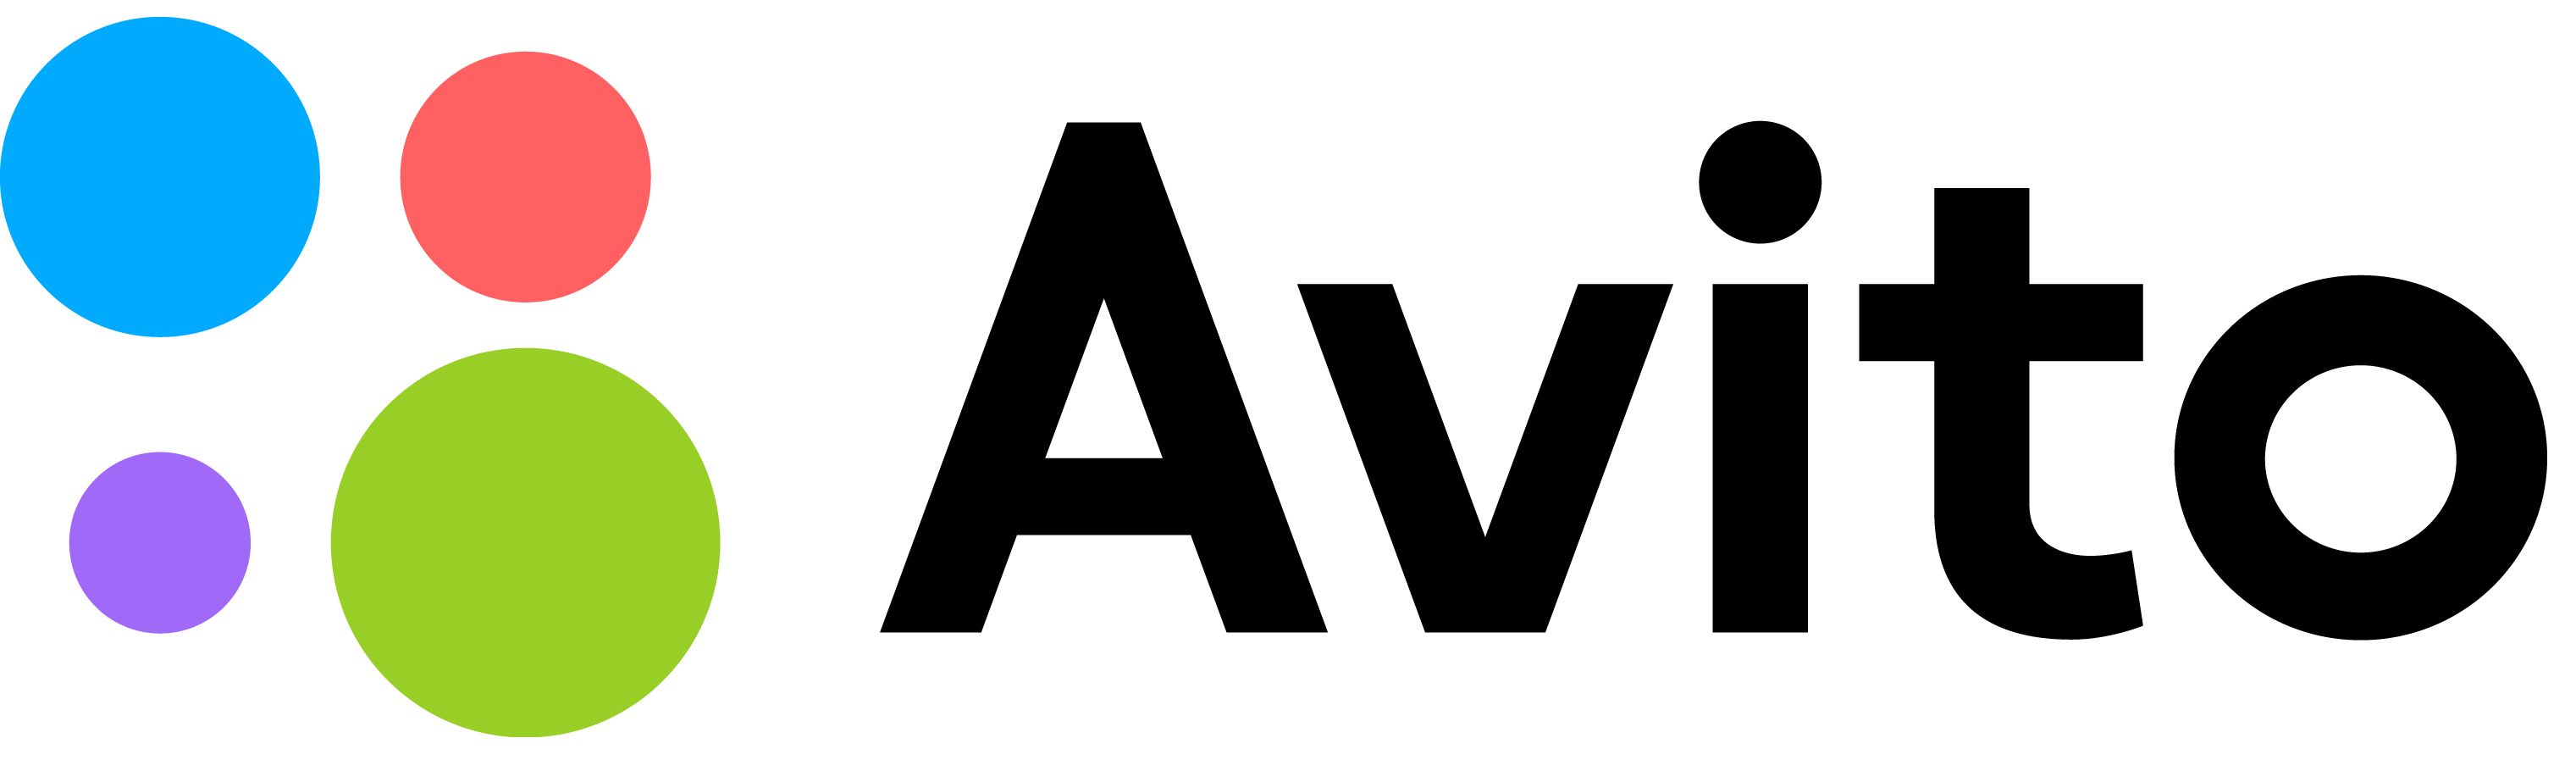 Https www ainude ai. Авито логотип. Логотип авито на прозрачном фоне. Авито маркетплейс. Avito значок.